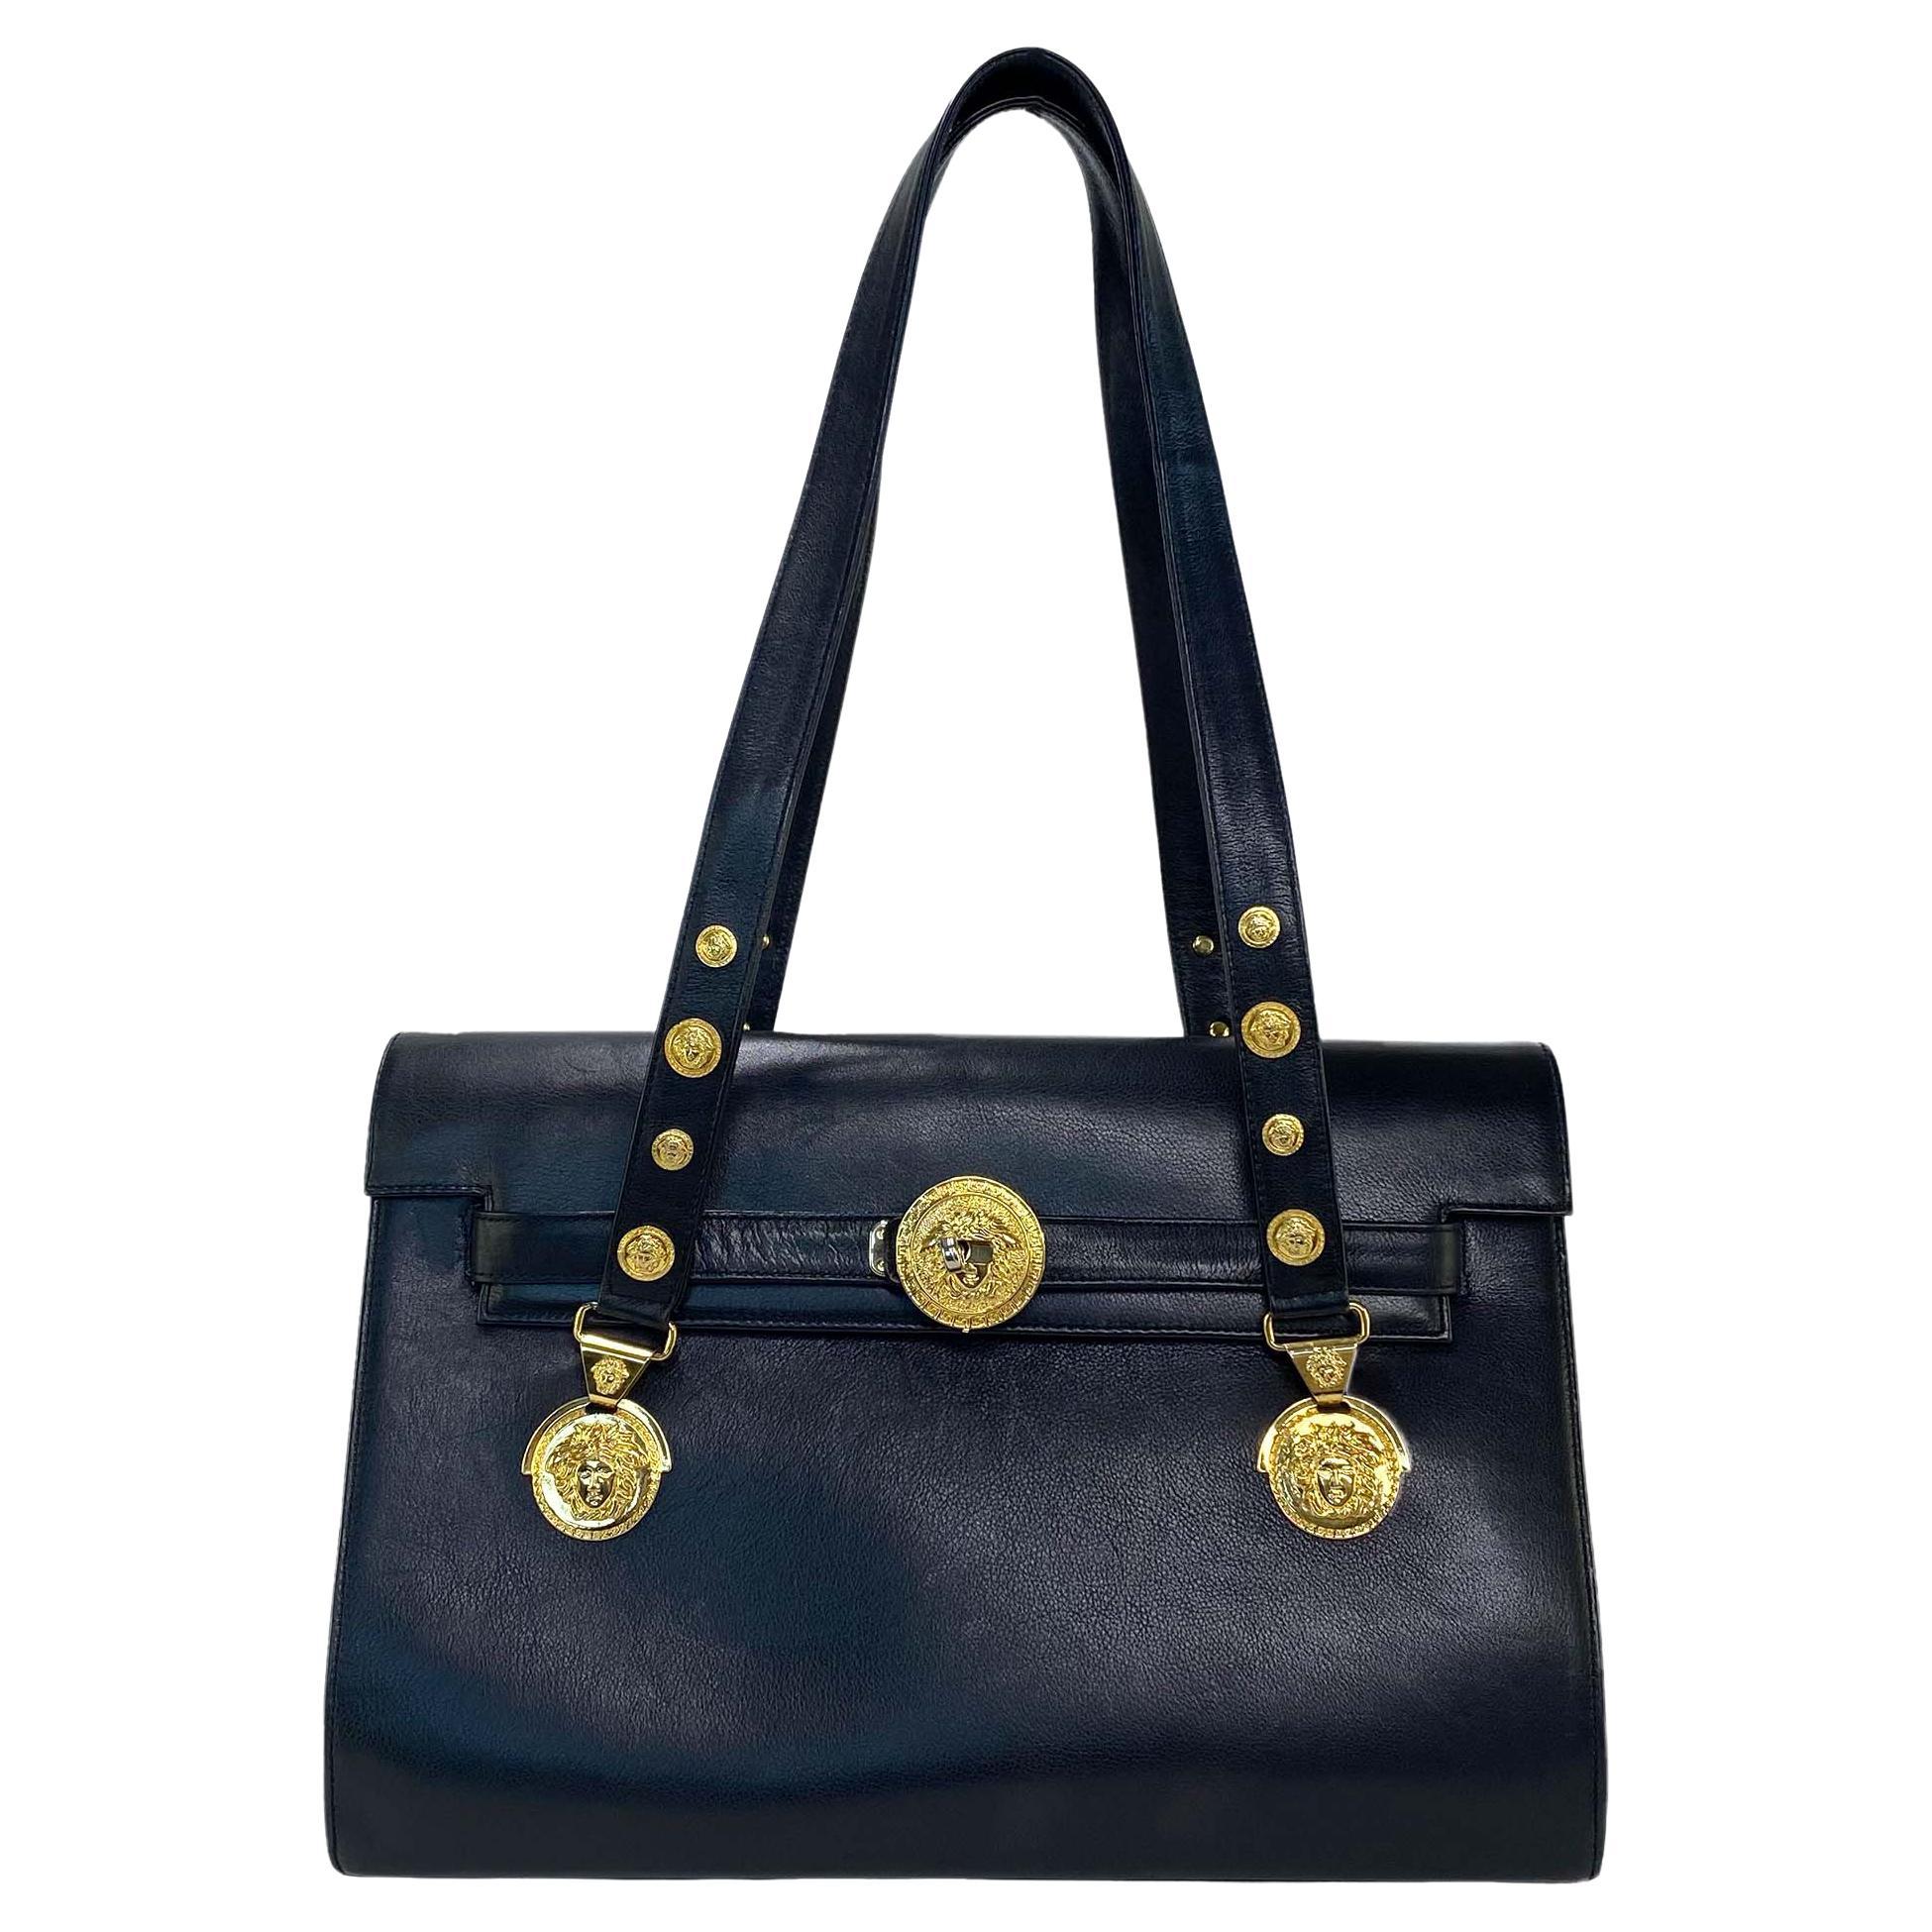 Gianni Versace croc print leather envelope bag Bags & Purses Handbags Purse Straps 